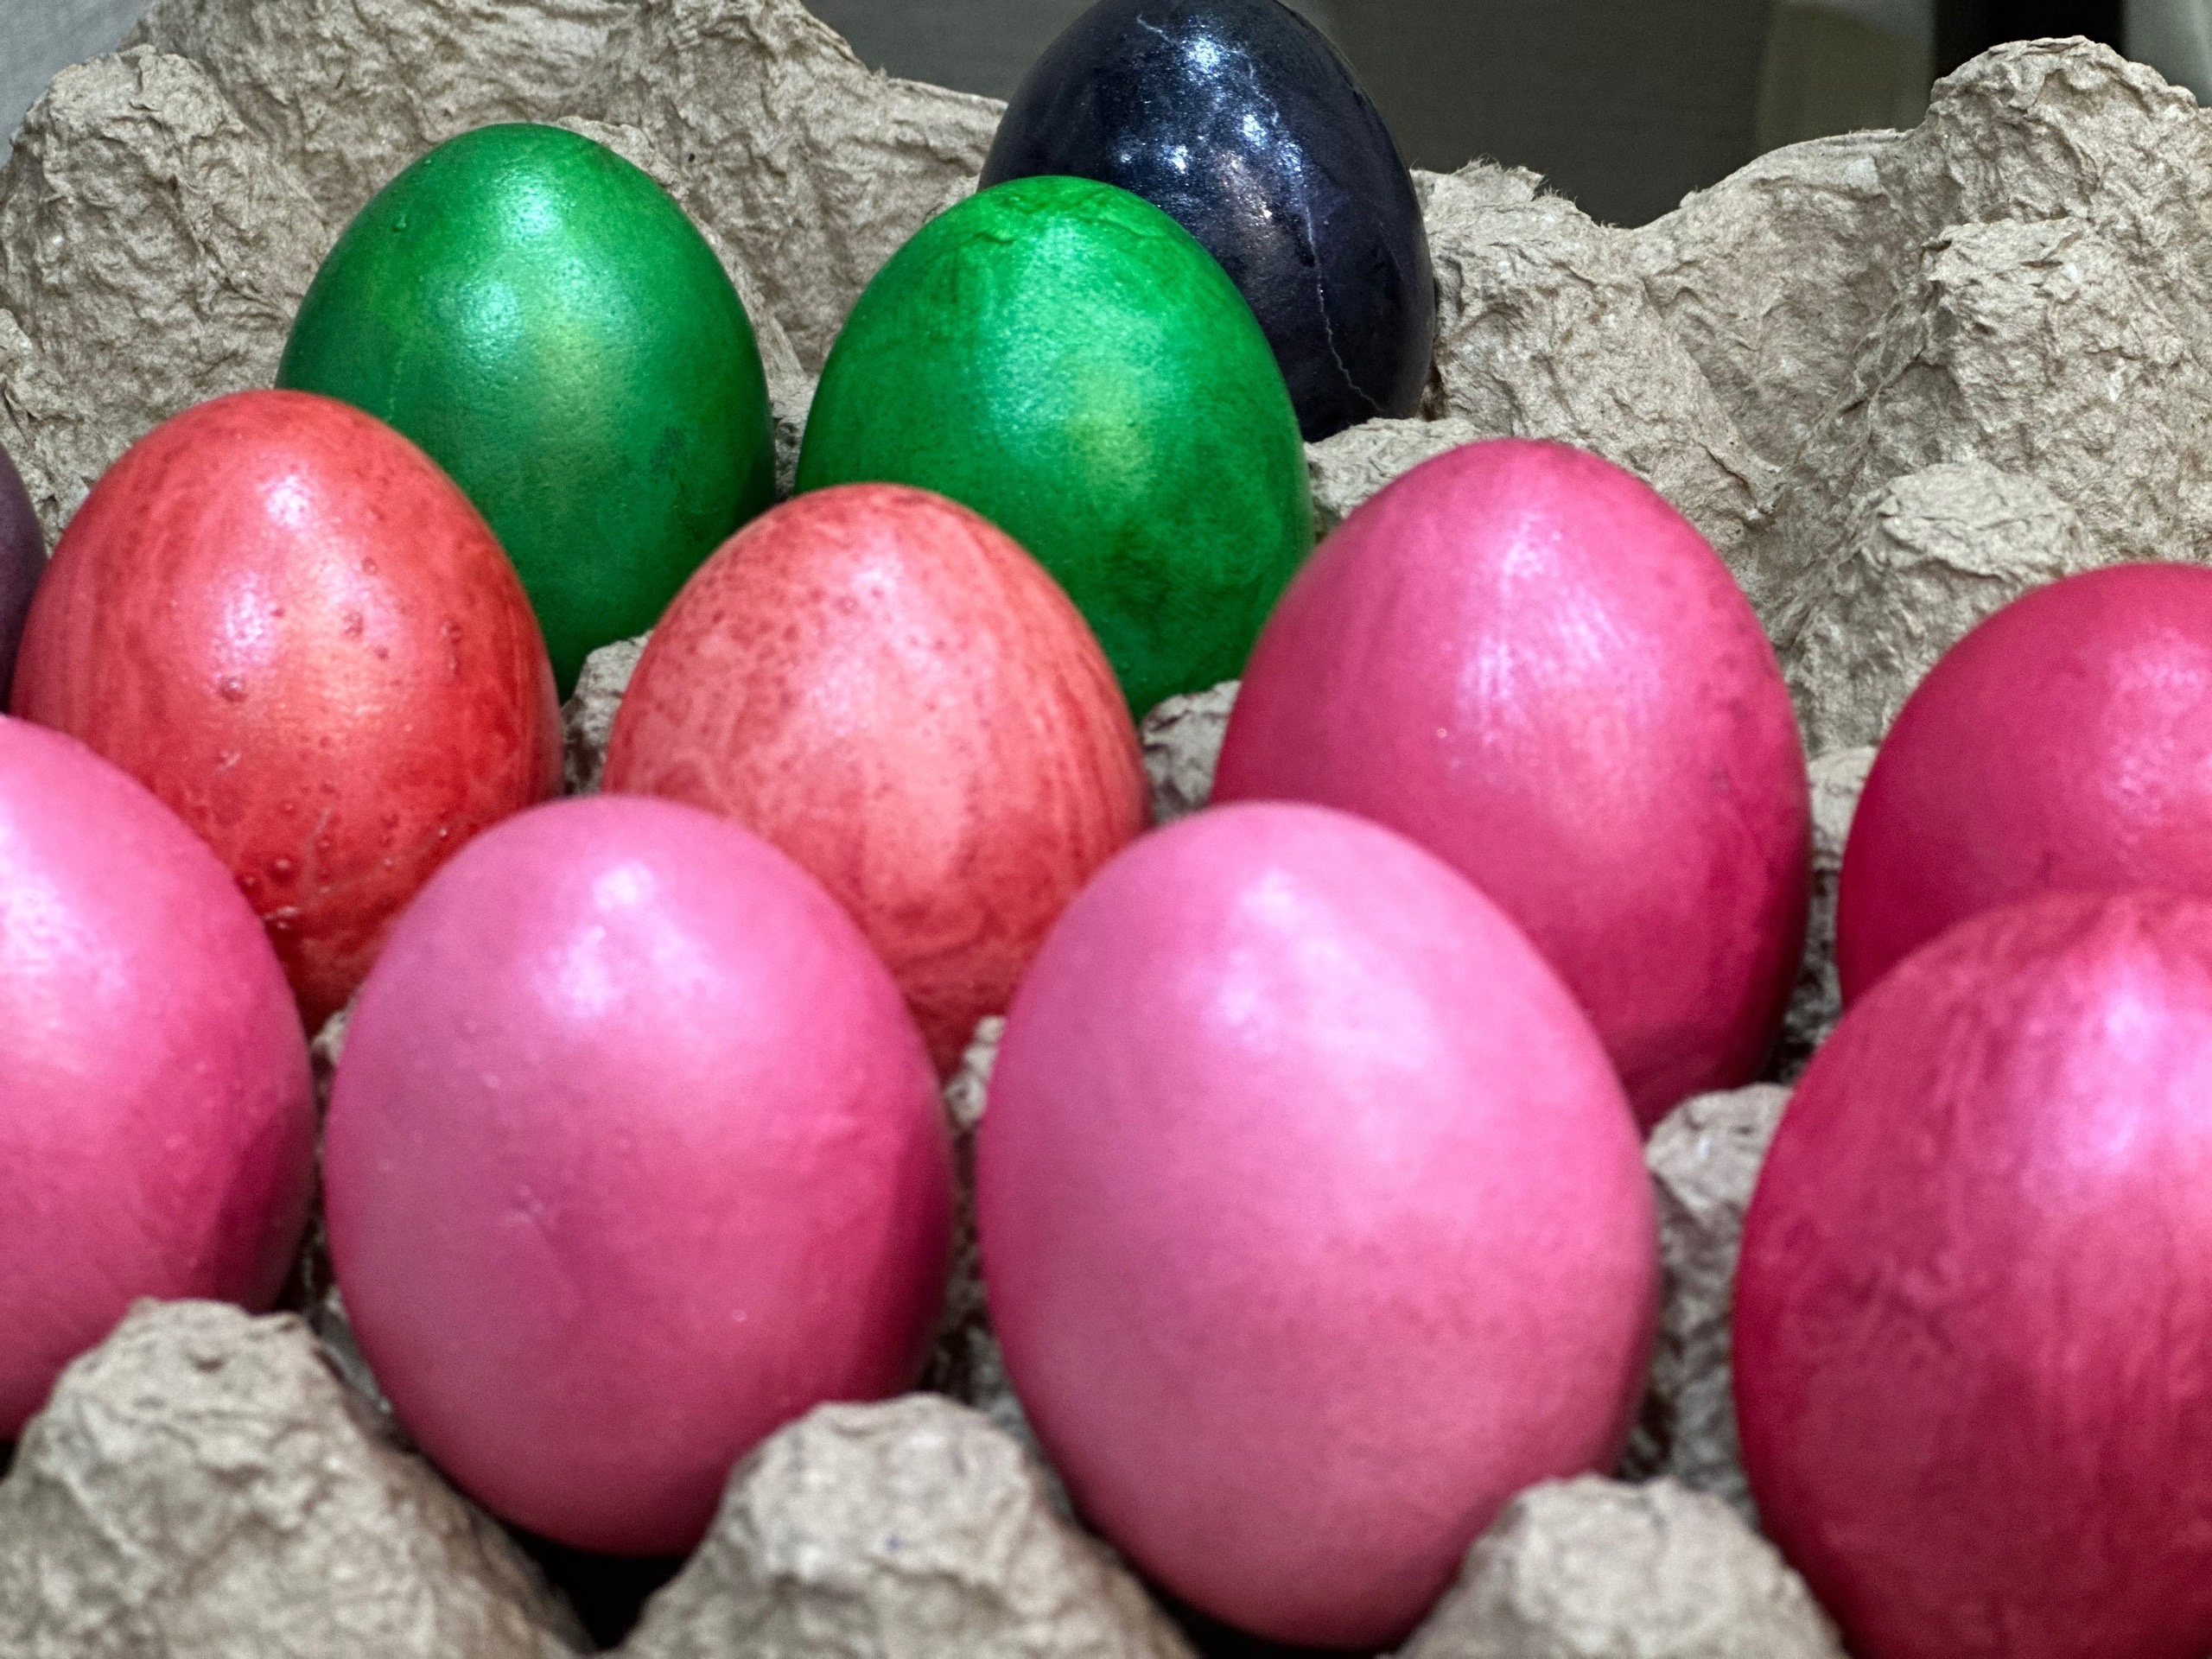 Бабушки в деревне красят яйца именно так: налейте в кастрюлю эту ядрёную жидкость  очень красиво